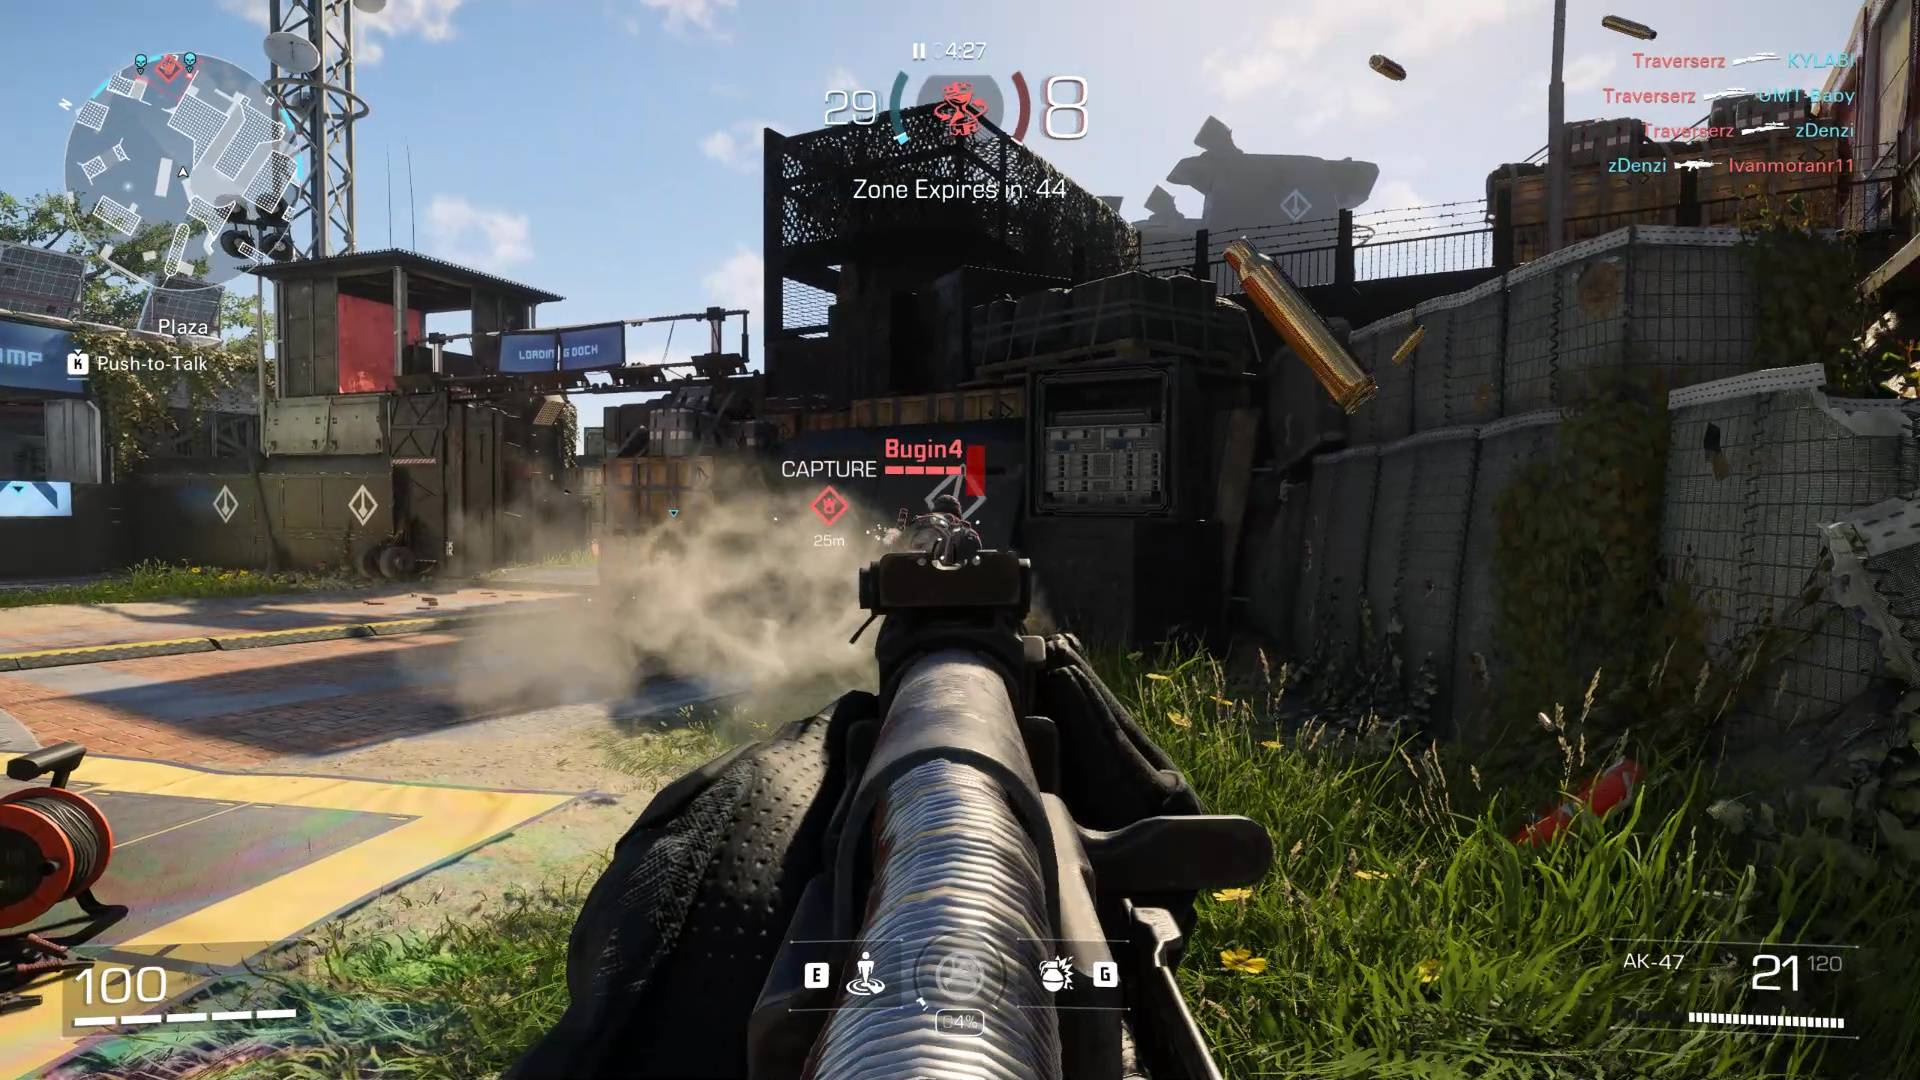 Snímek z hraní XDefiant ukazující přestřelku